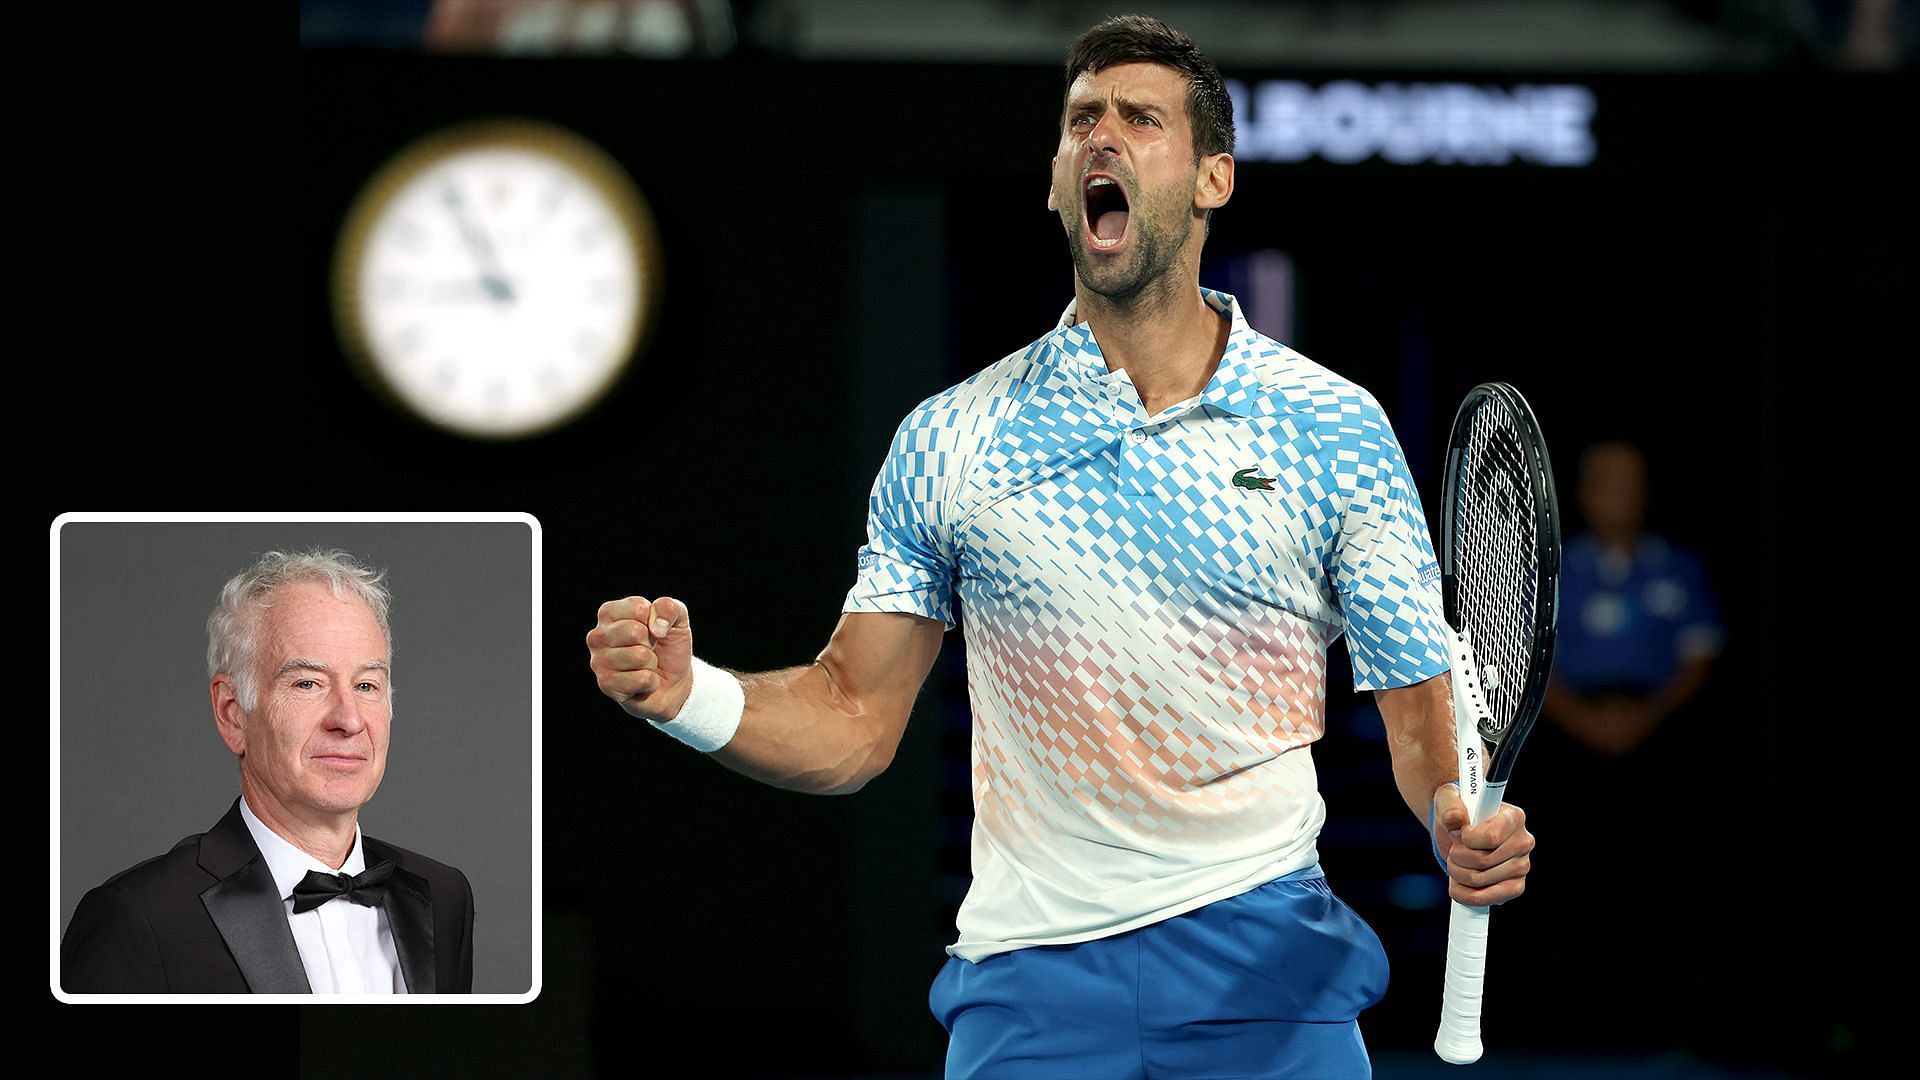 John McEnroe thinks Novak Djokovic will receive more respect over time.